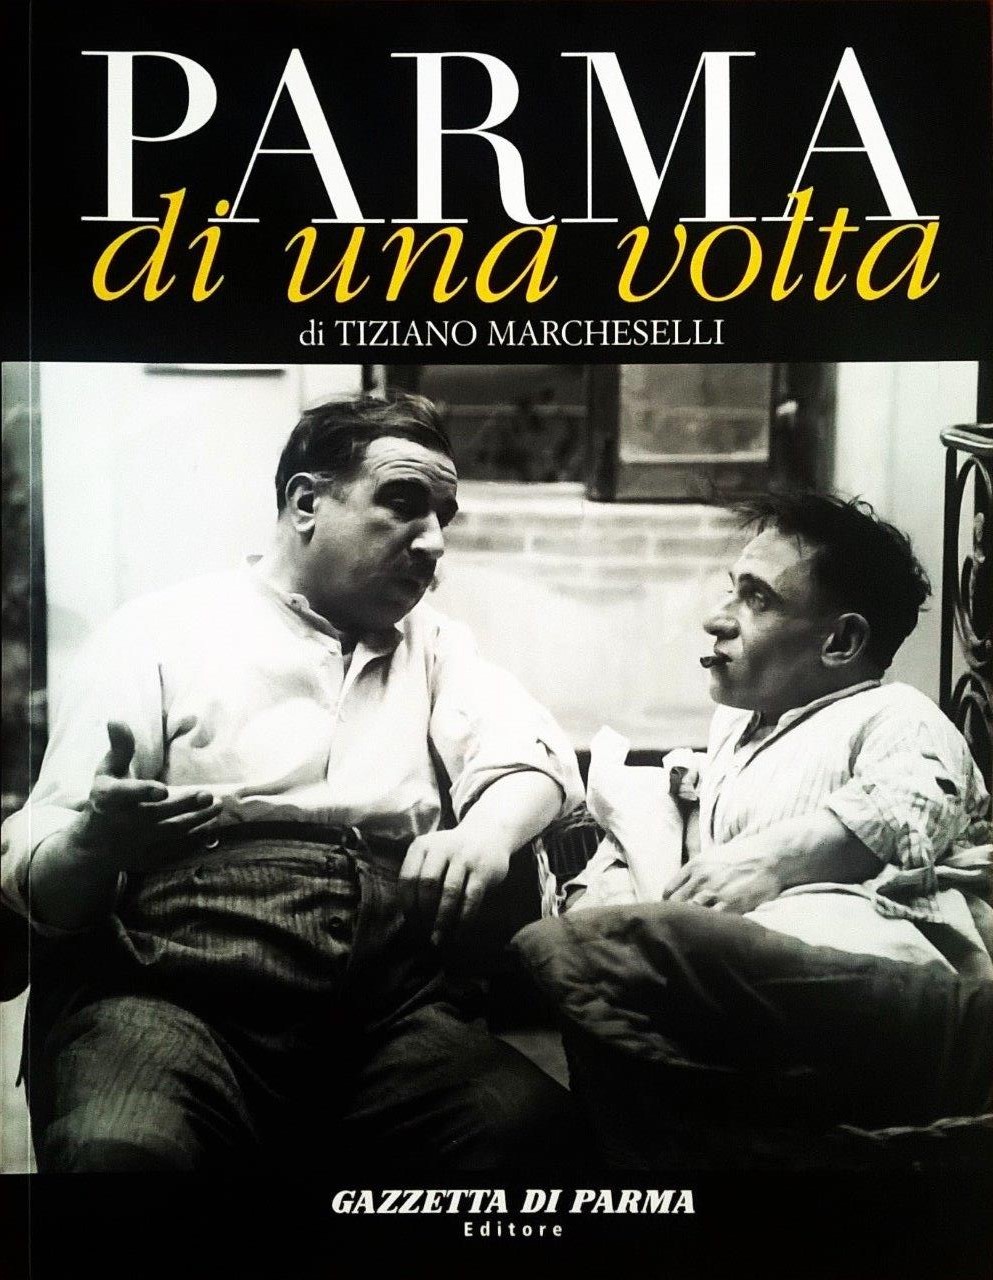 Tiziano Marcheselli, Parma di una volta - volume dodicesimo, Parma, Gazzetta di Parma Editore (Grafiche Step Editrice), 2007